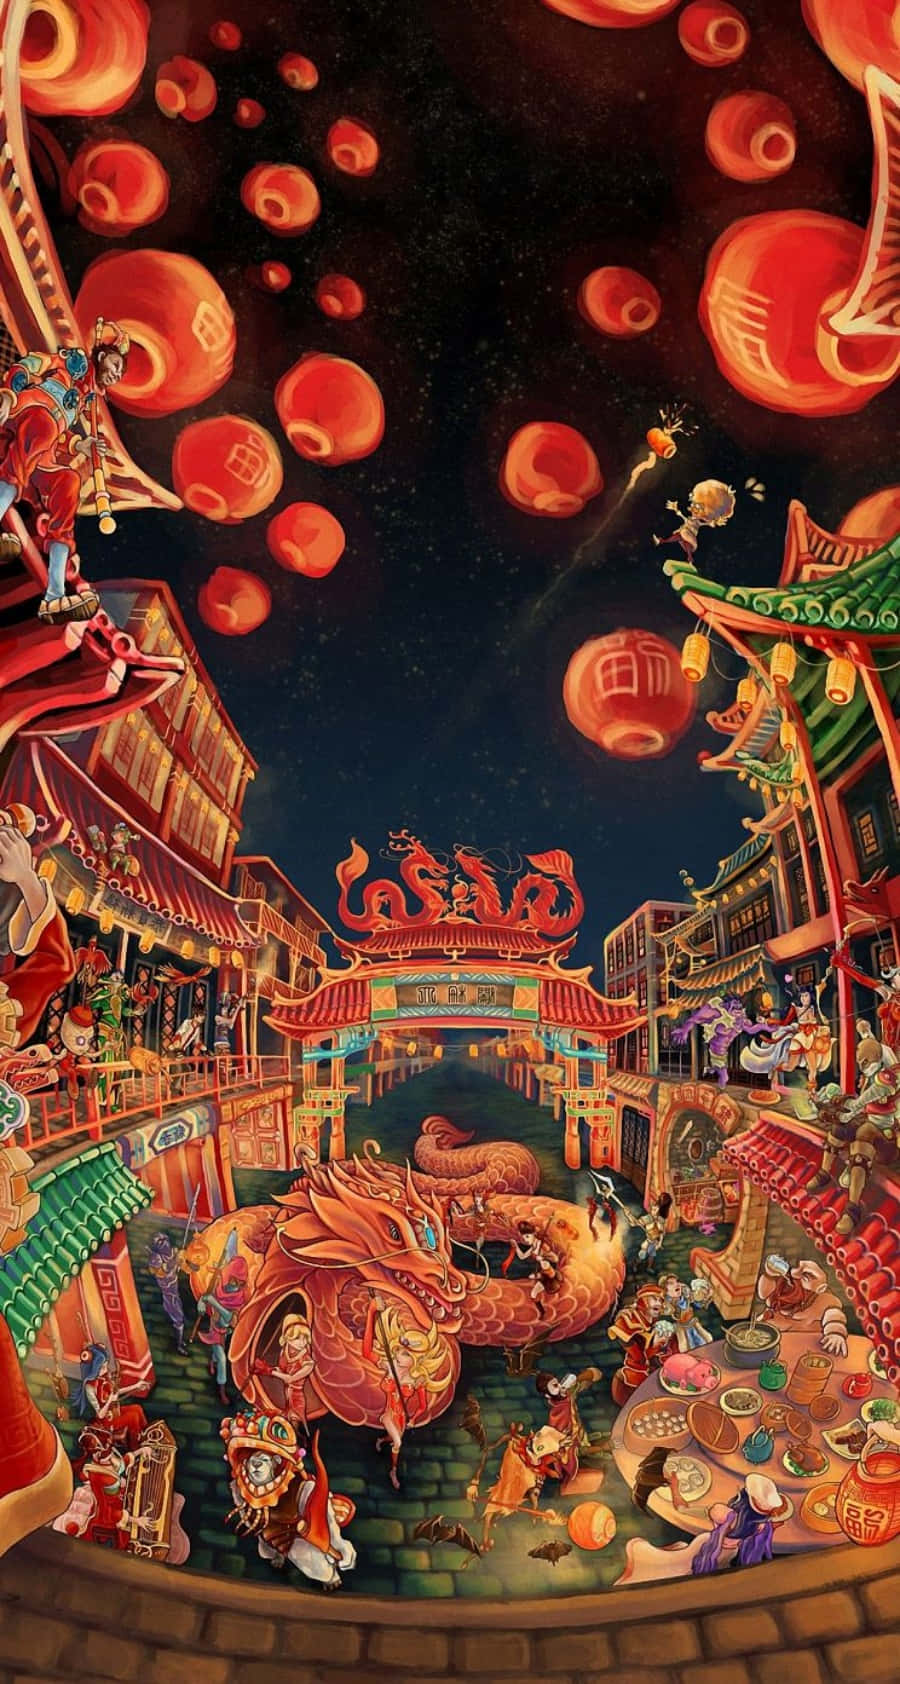 Feieredas Chinesische Neujahr Mobil Mit Dem Iphone. Wallpaper